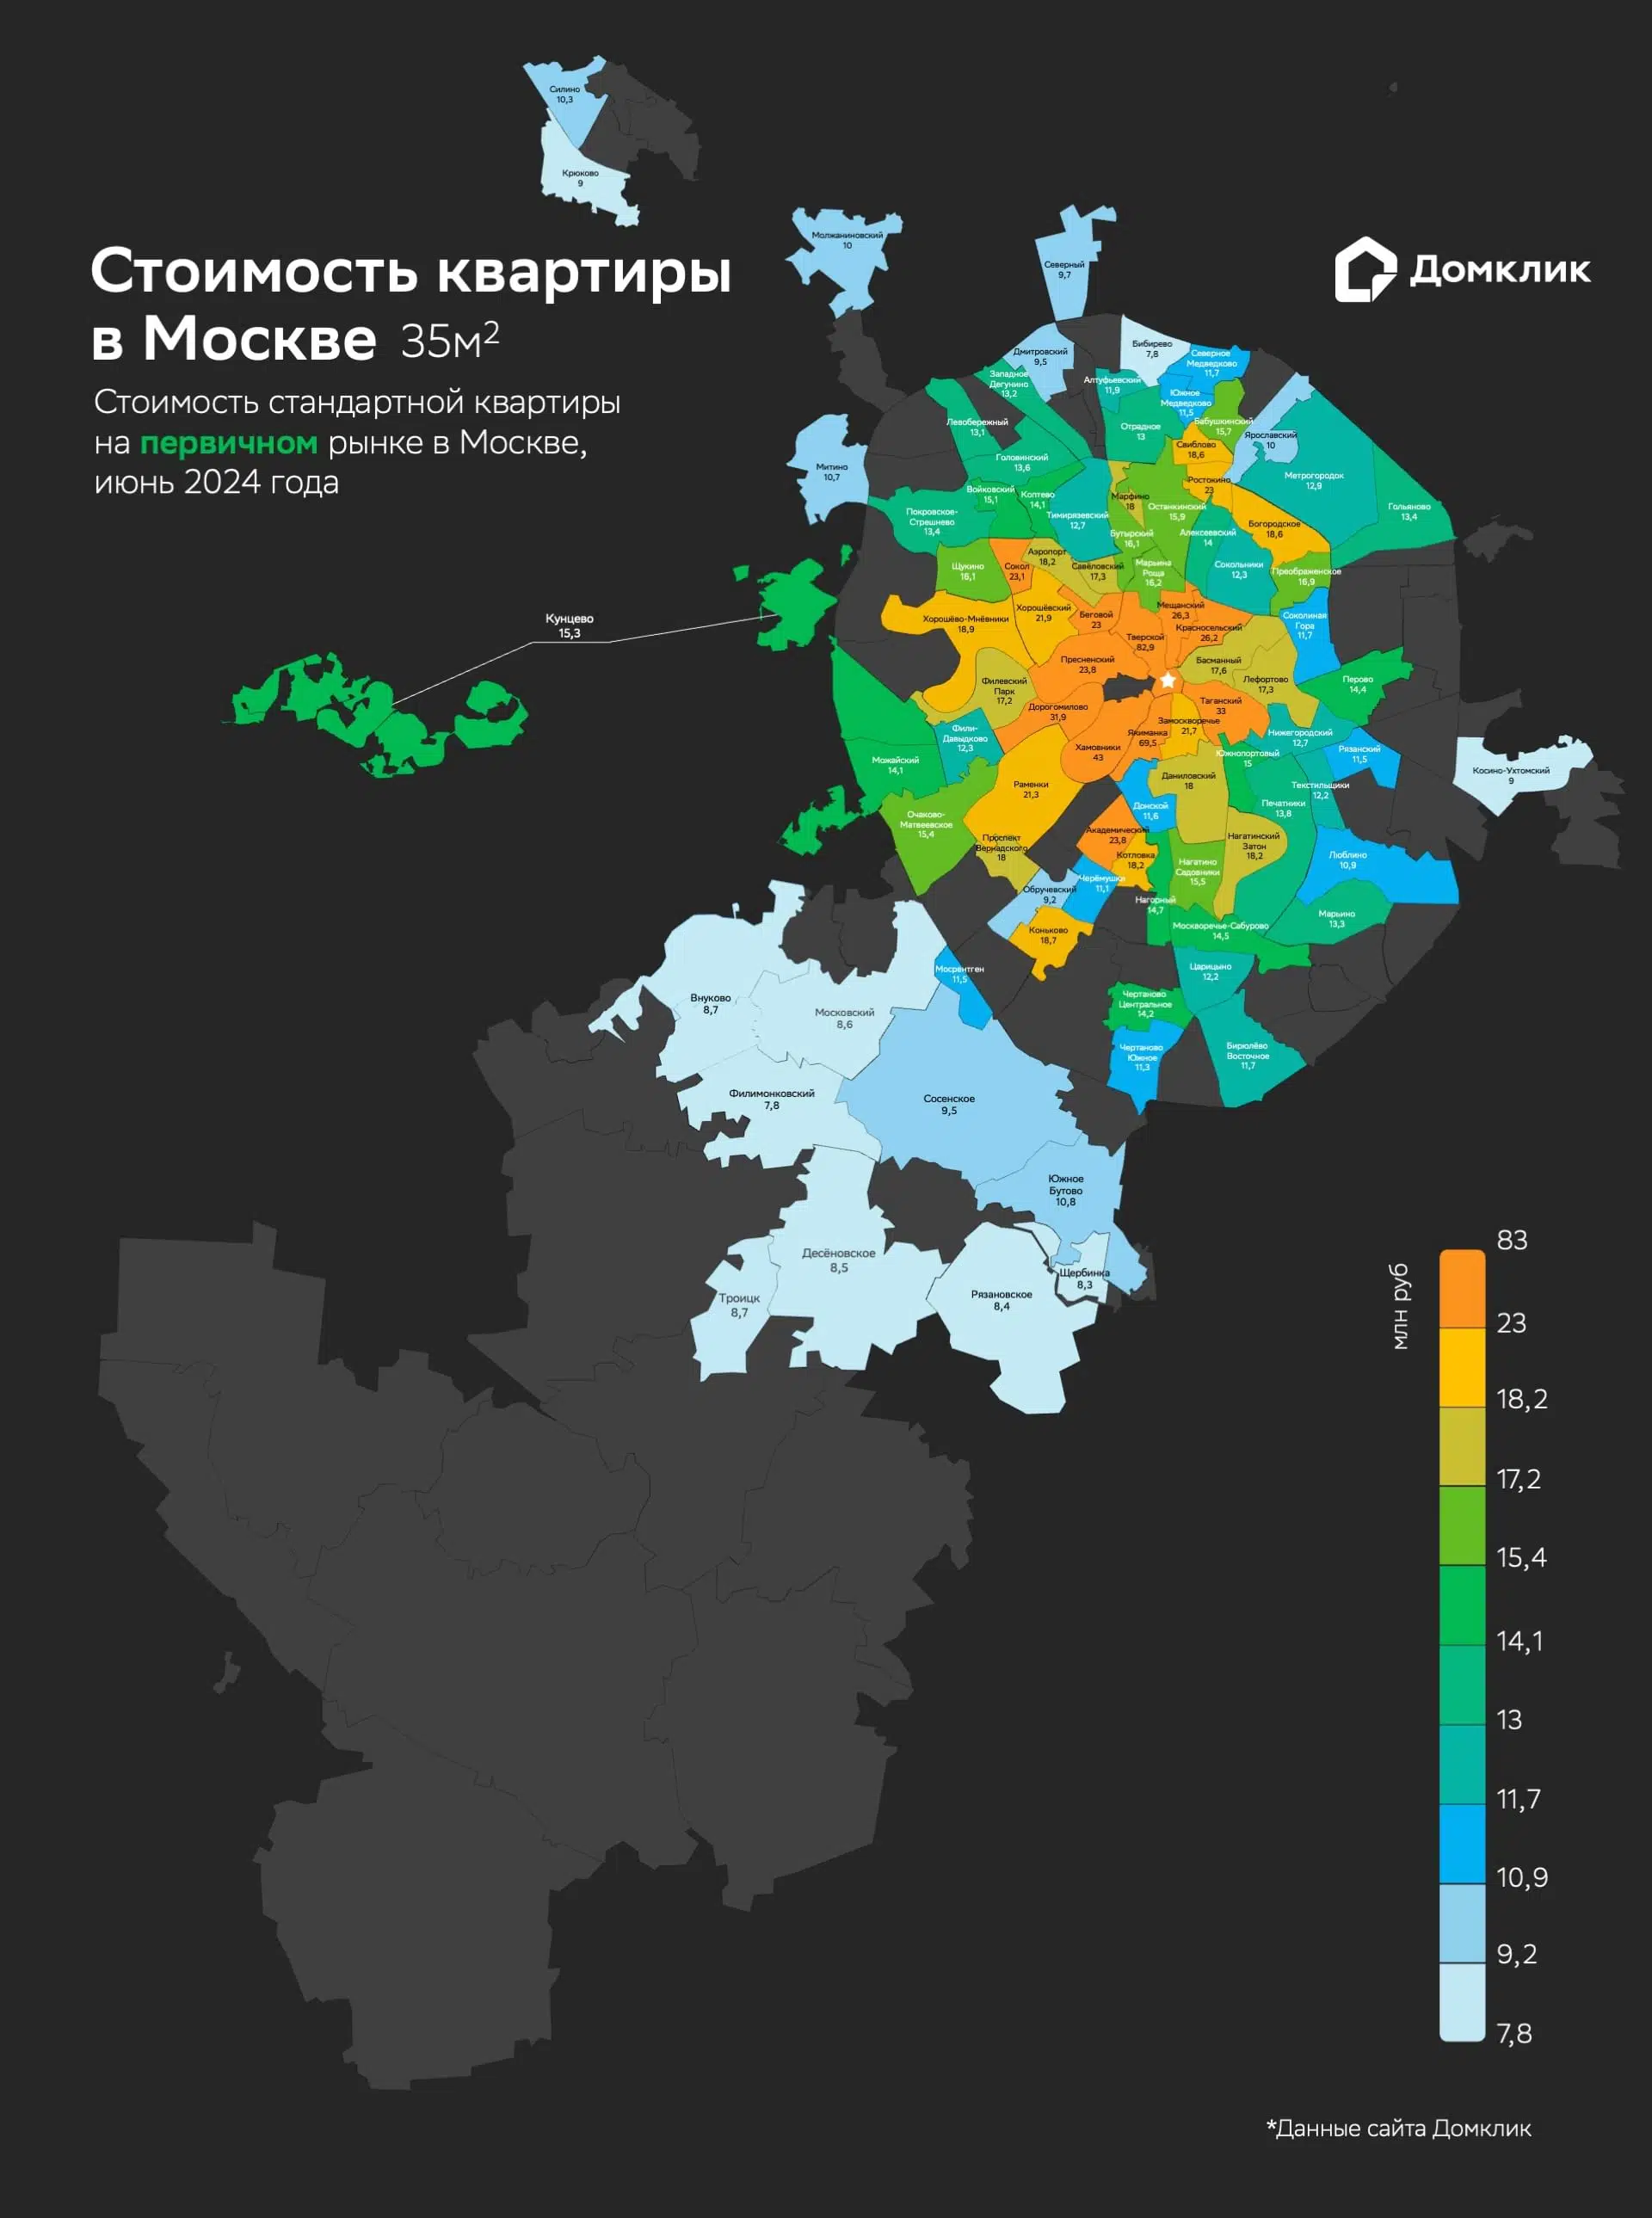 Рис.1 Карта стоимости стандартной квартиры на первичном рынке недвижимости Москвы. Для каждого района была посчитана медианная стоимость кв м, после чего полученное значение умножалось на площадь стандартной квартиры (35 кв. м). Данные основаны на анализе объявлений на сайте Домклик, актуальных на июнь 2024